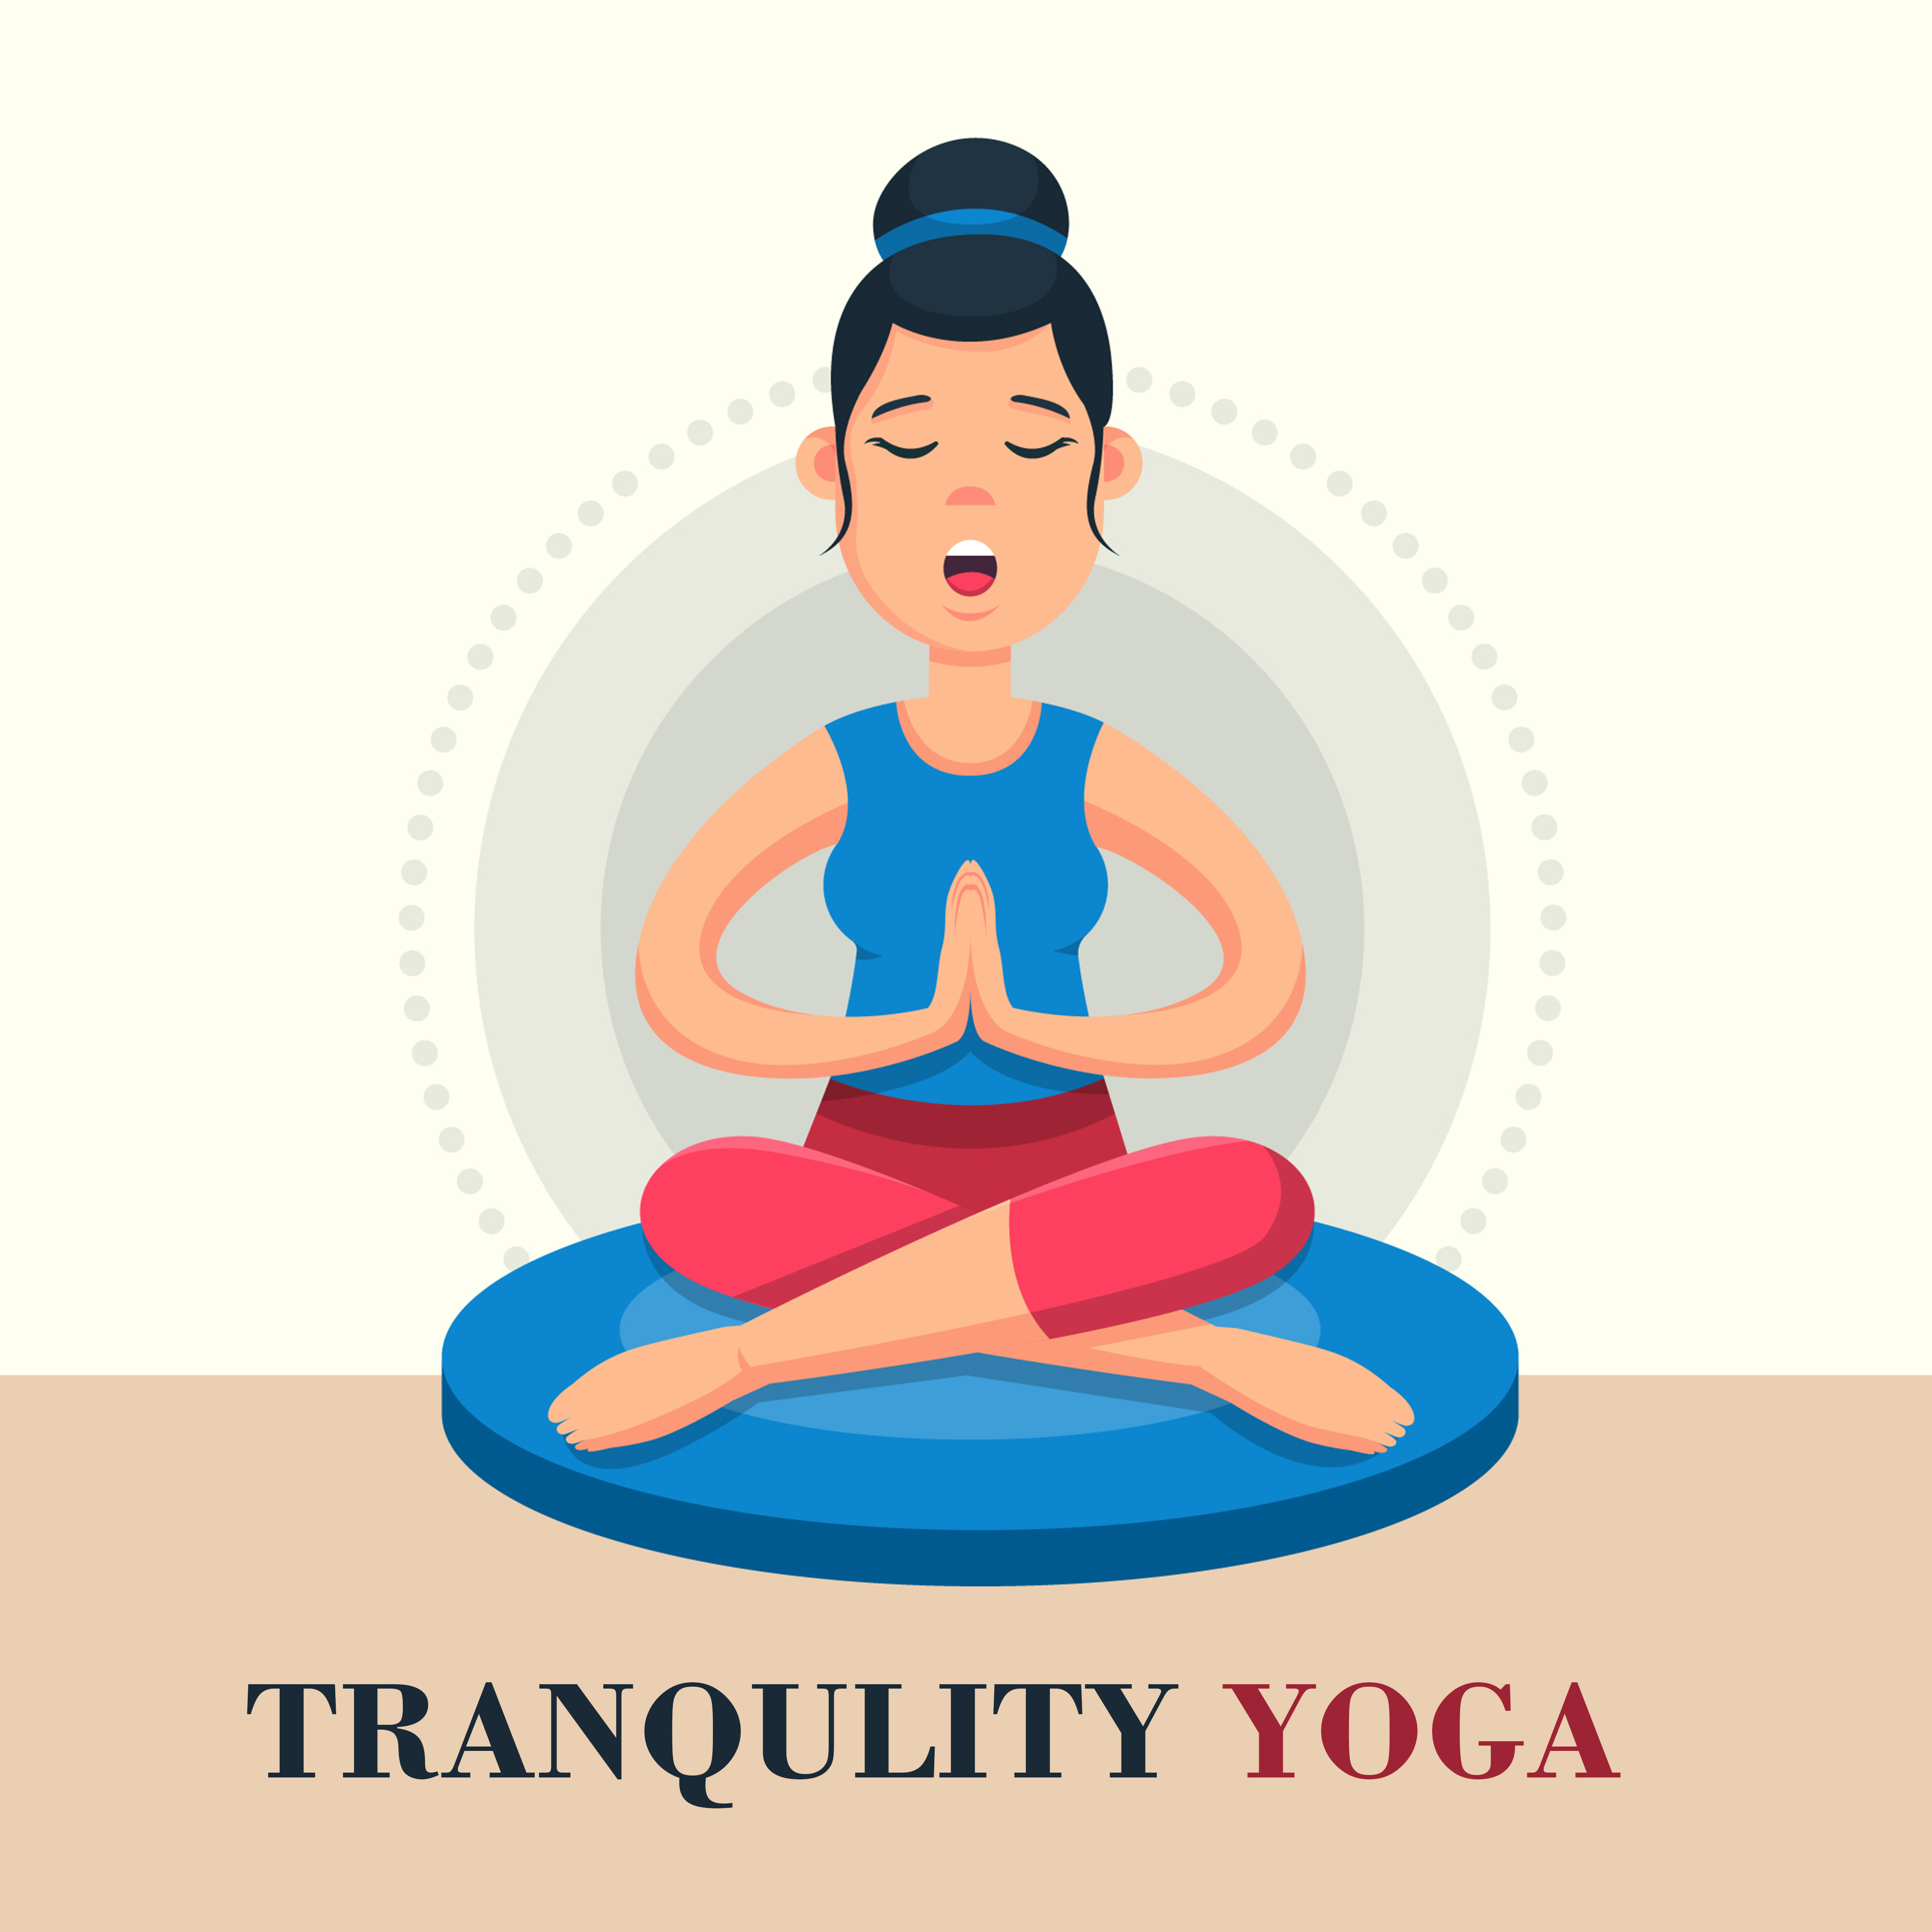 Tranqulity Yoga